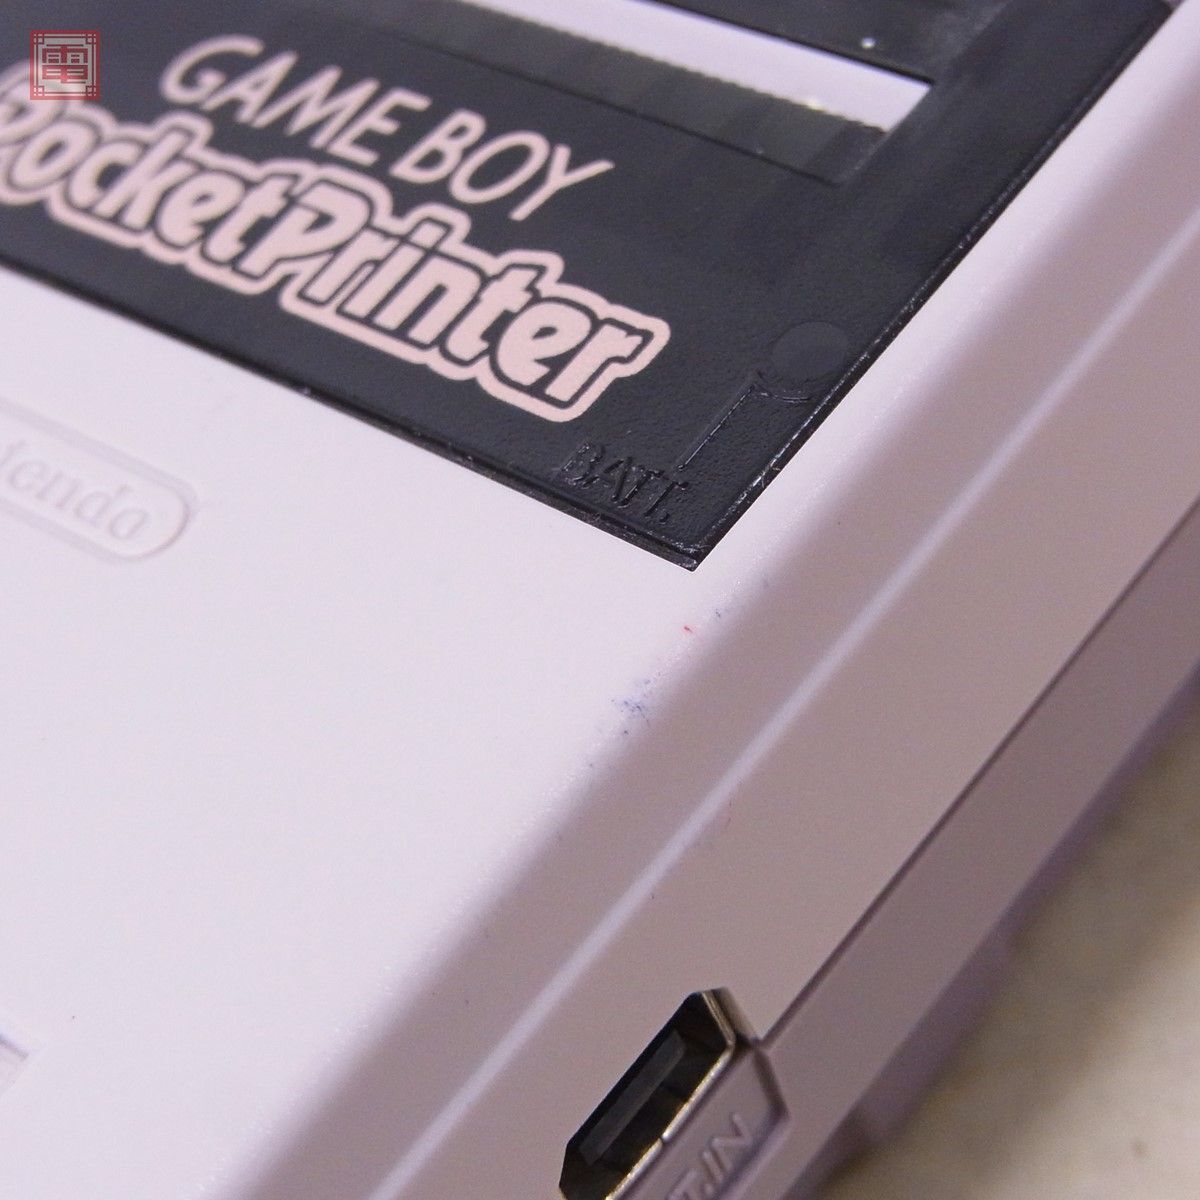 GB ゲームボーイ ポケットプリンター MGB-007 計2個セット GAMEBOY Pocket Printer Nintendo ニンテンドー 任天堂【10の画像9